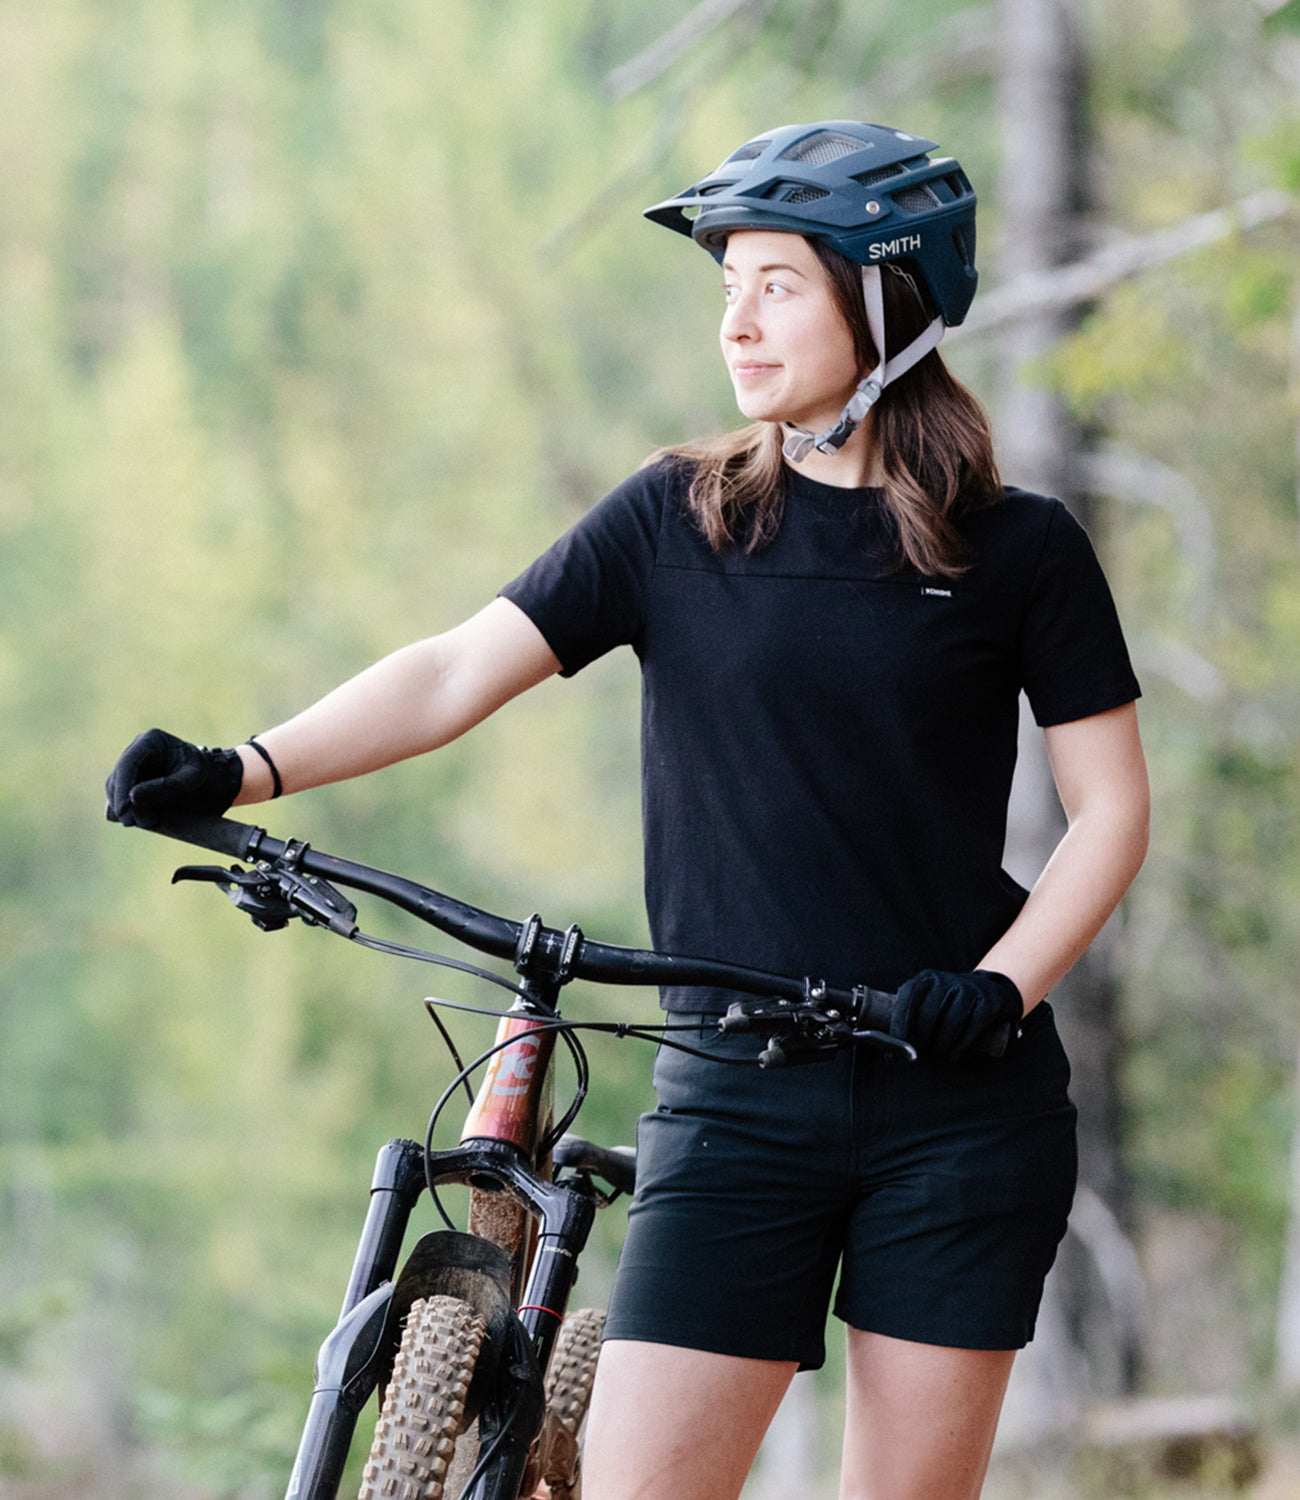 Women's Holman Tee in black worn by a woman riding a mountain bike mobile size image